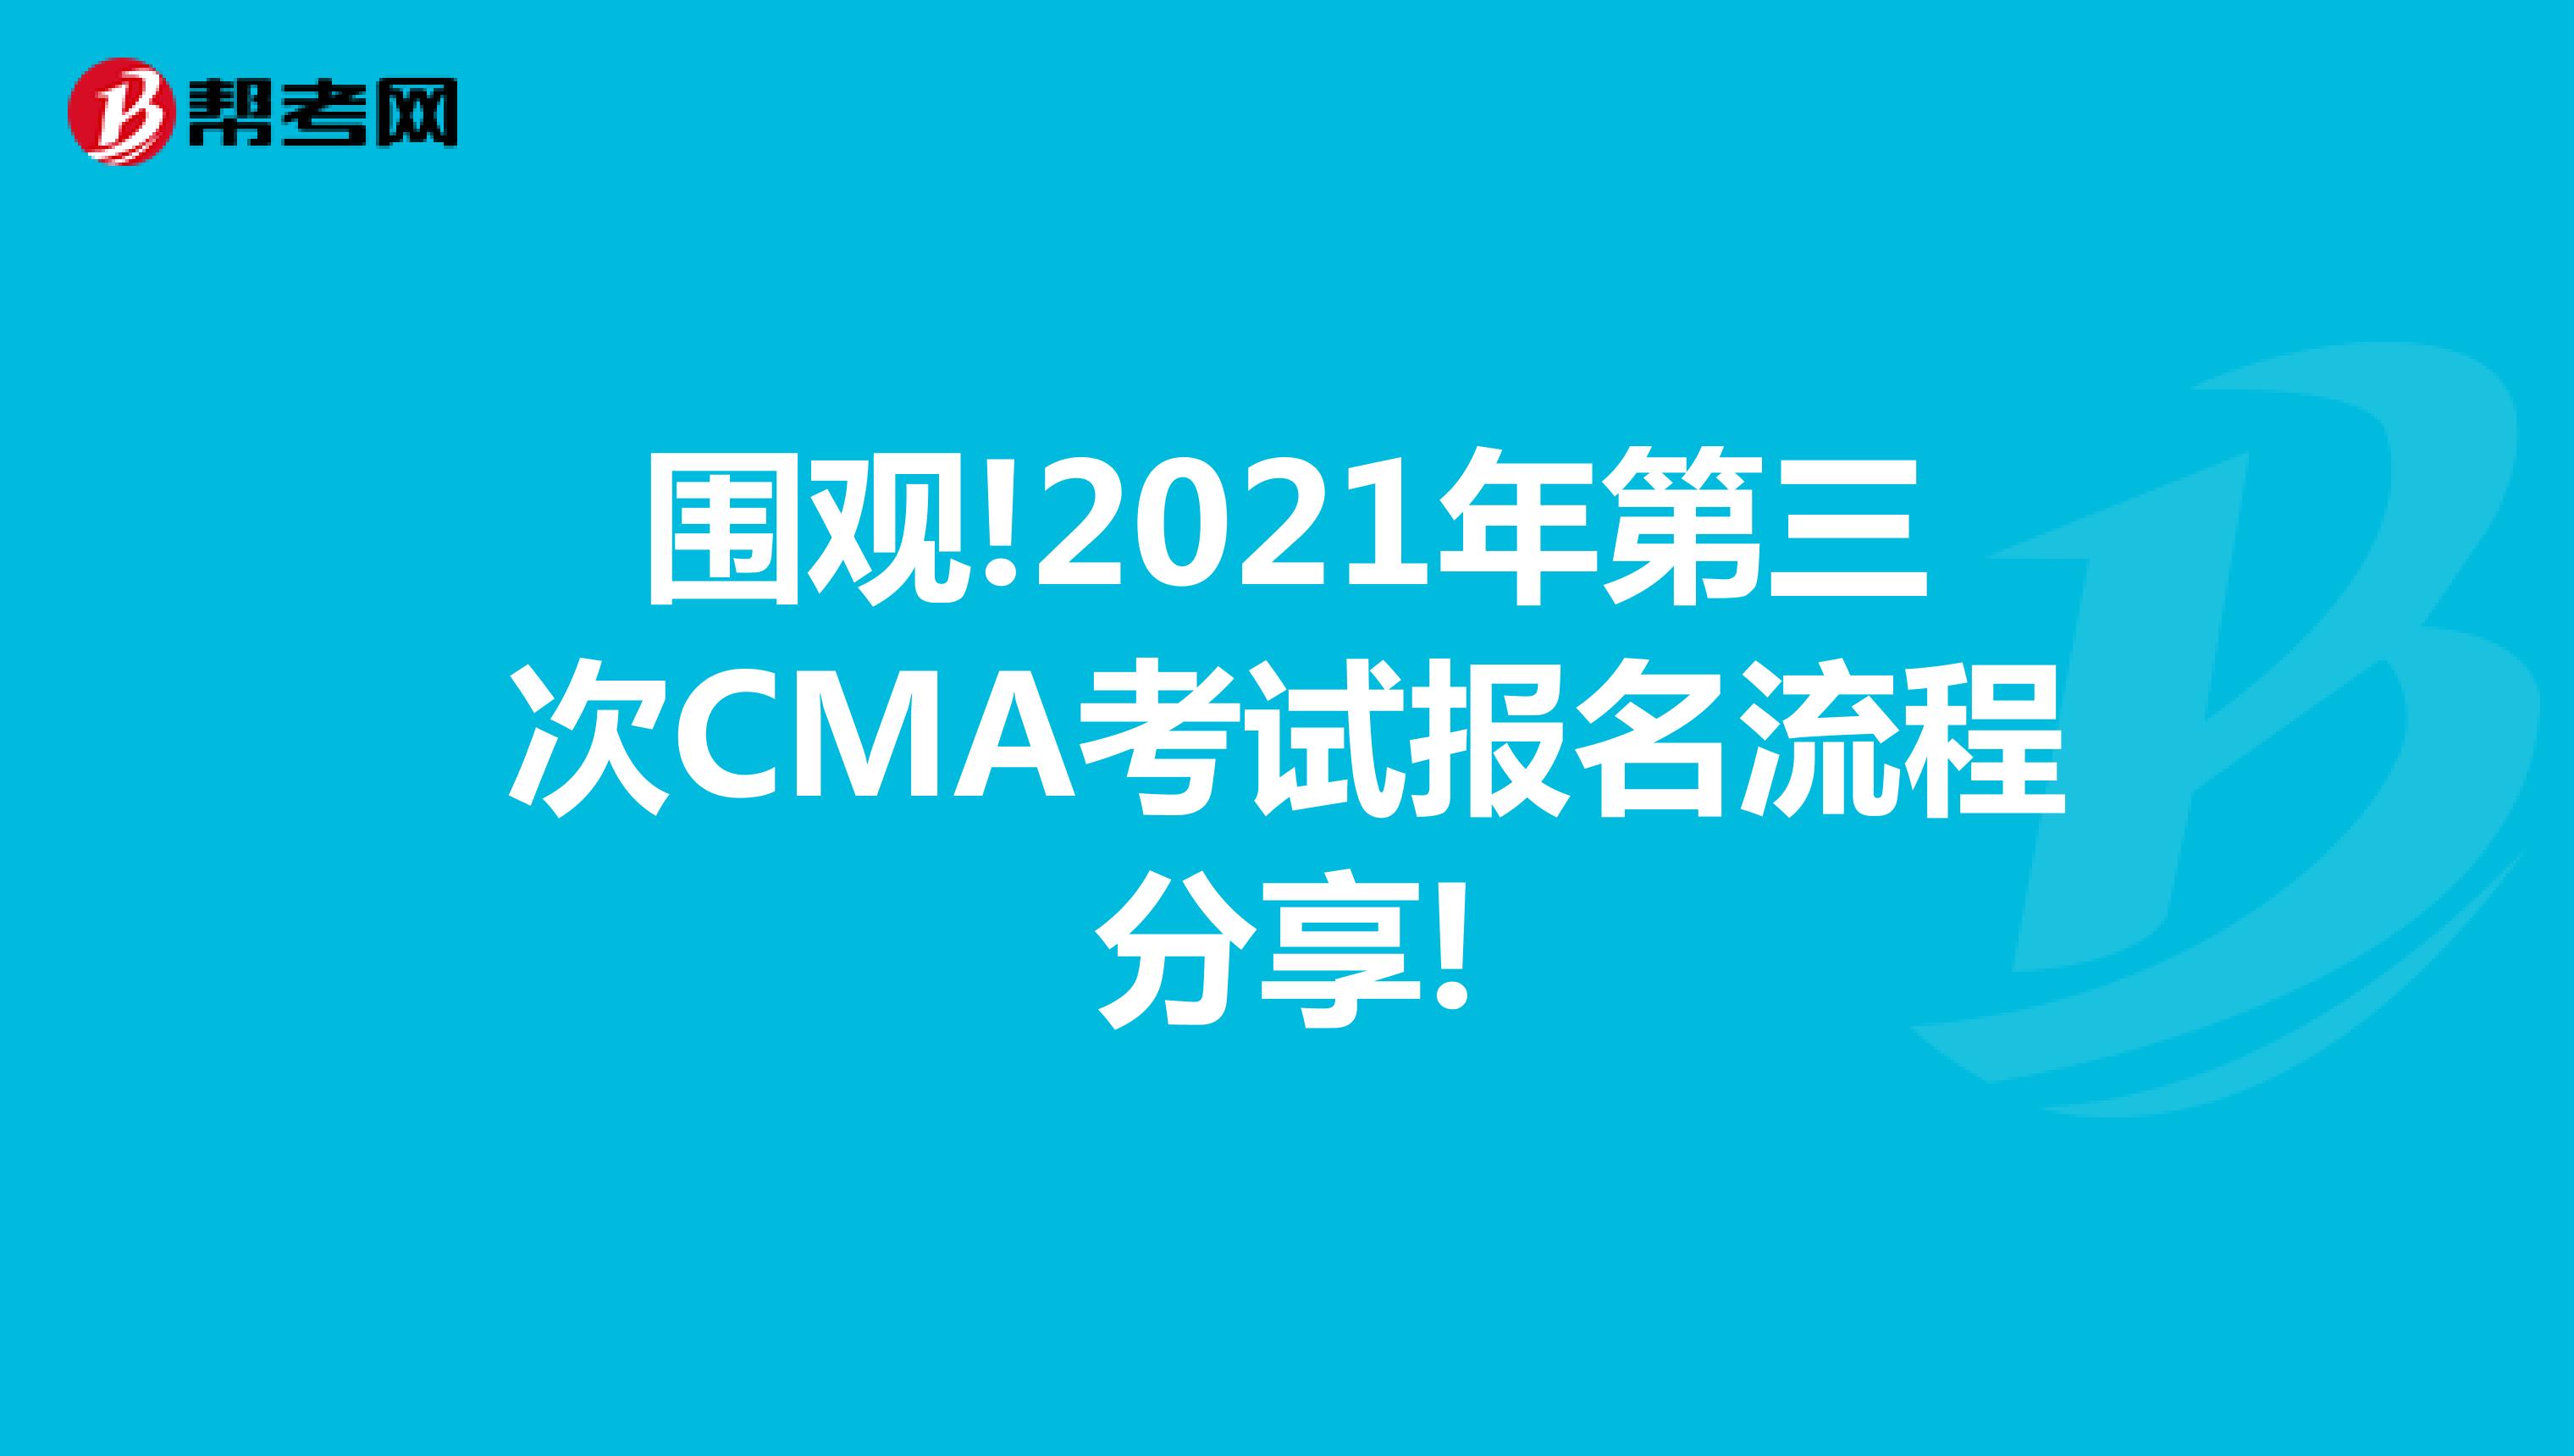 围观!2021年第三次CMA考试报名流程分享!